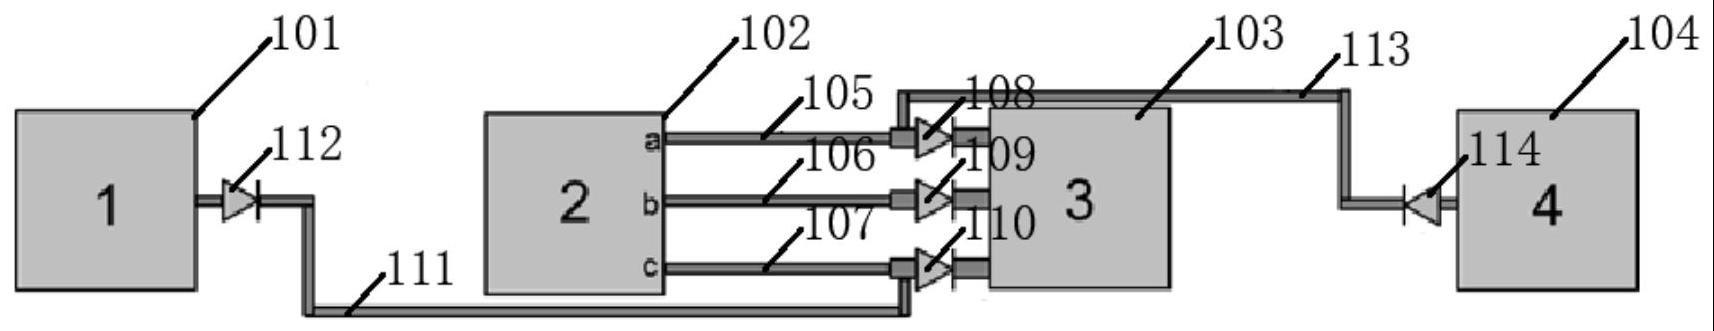 评估金属互连线峰值电流的测试结构及其使用方法与流程